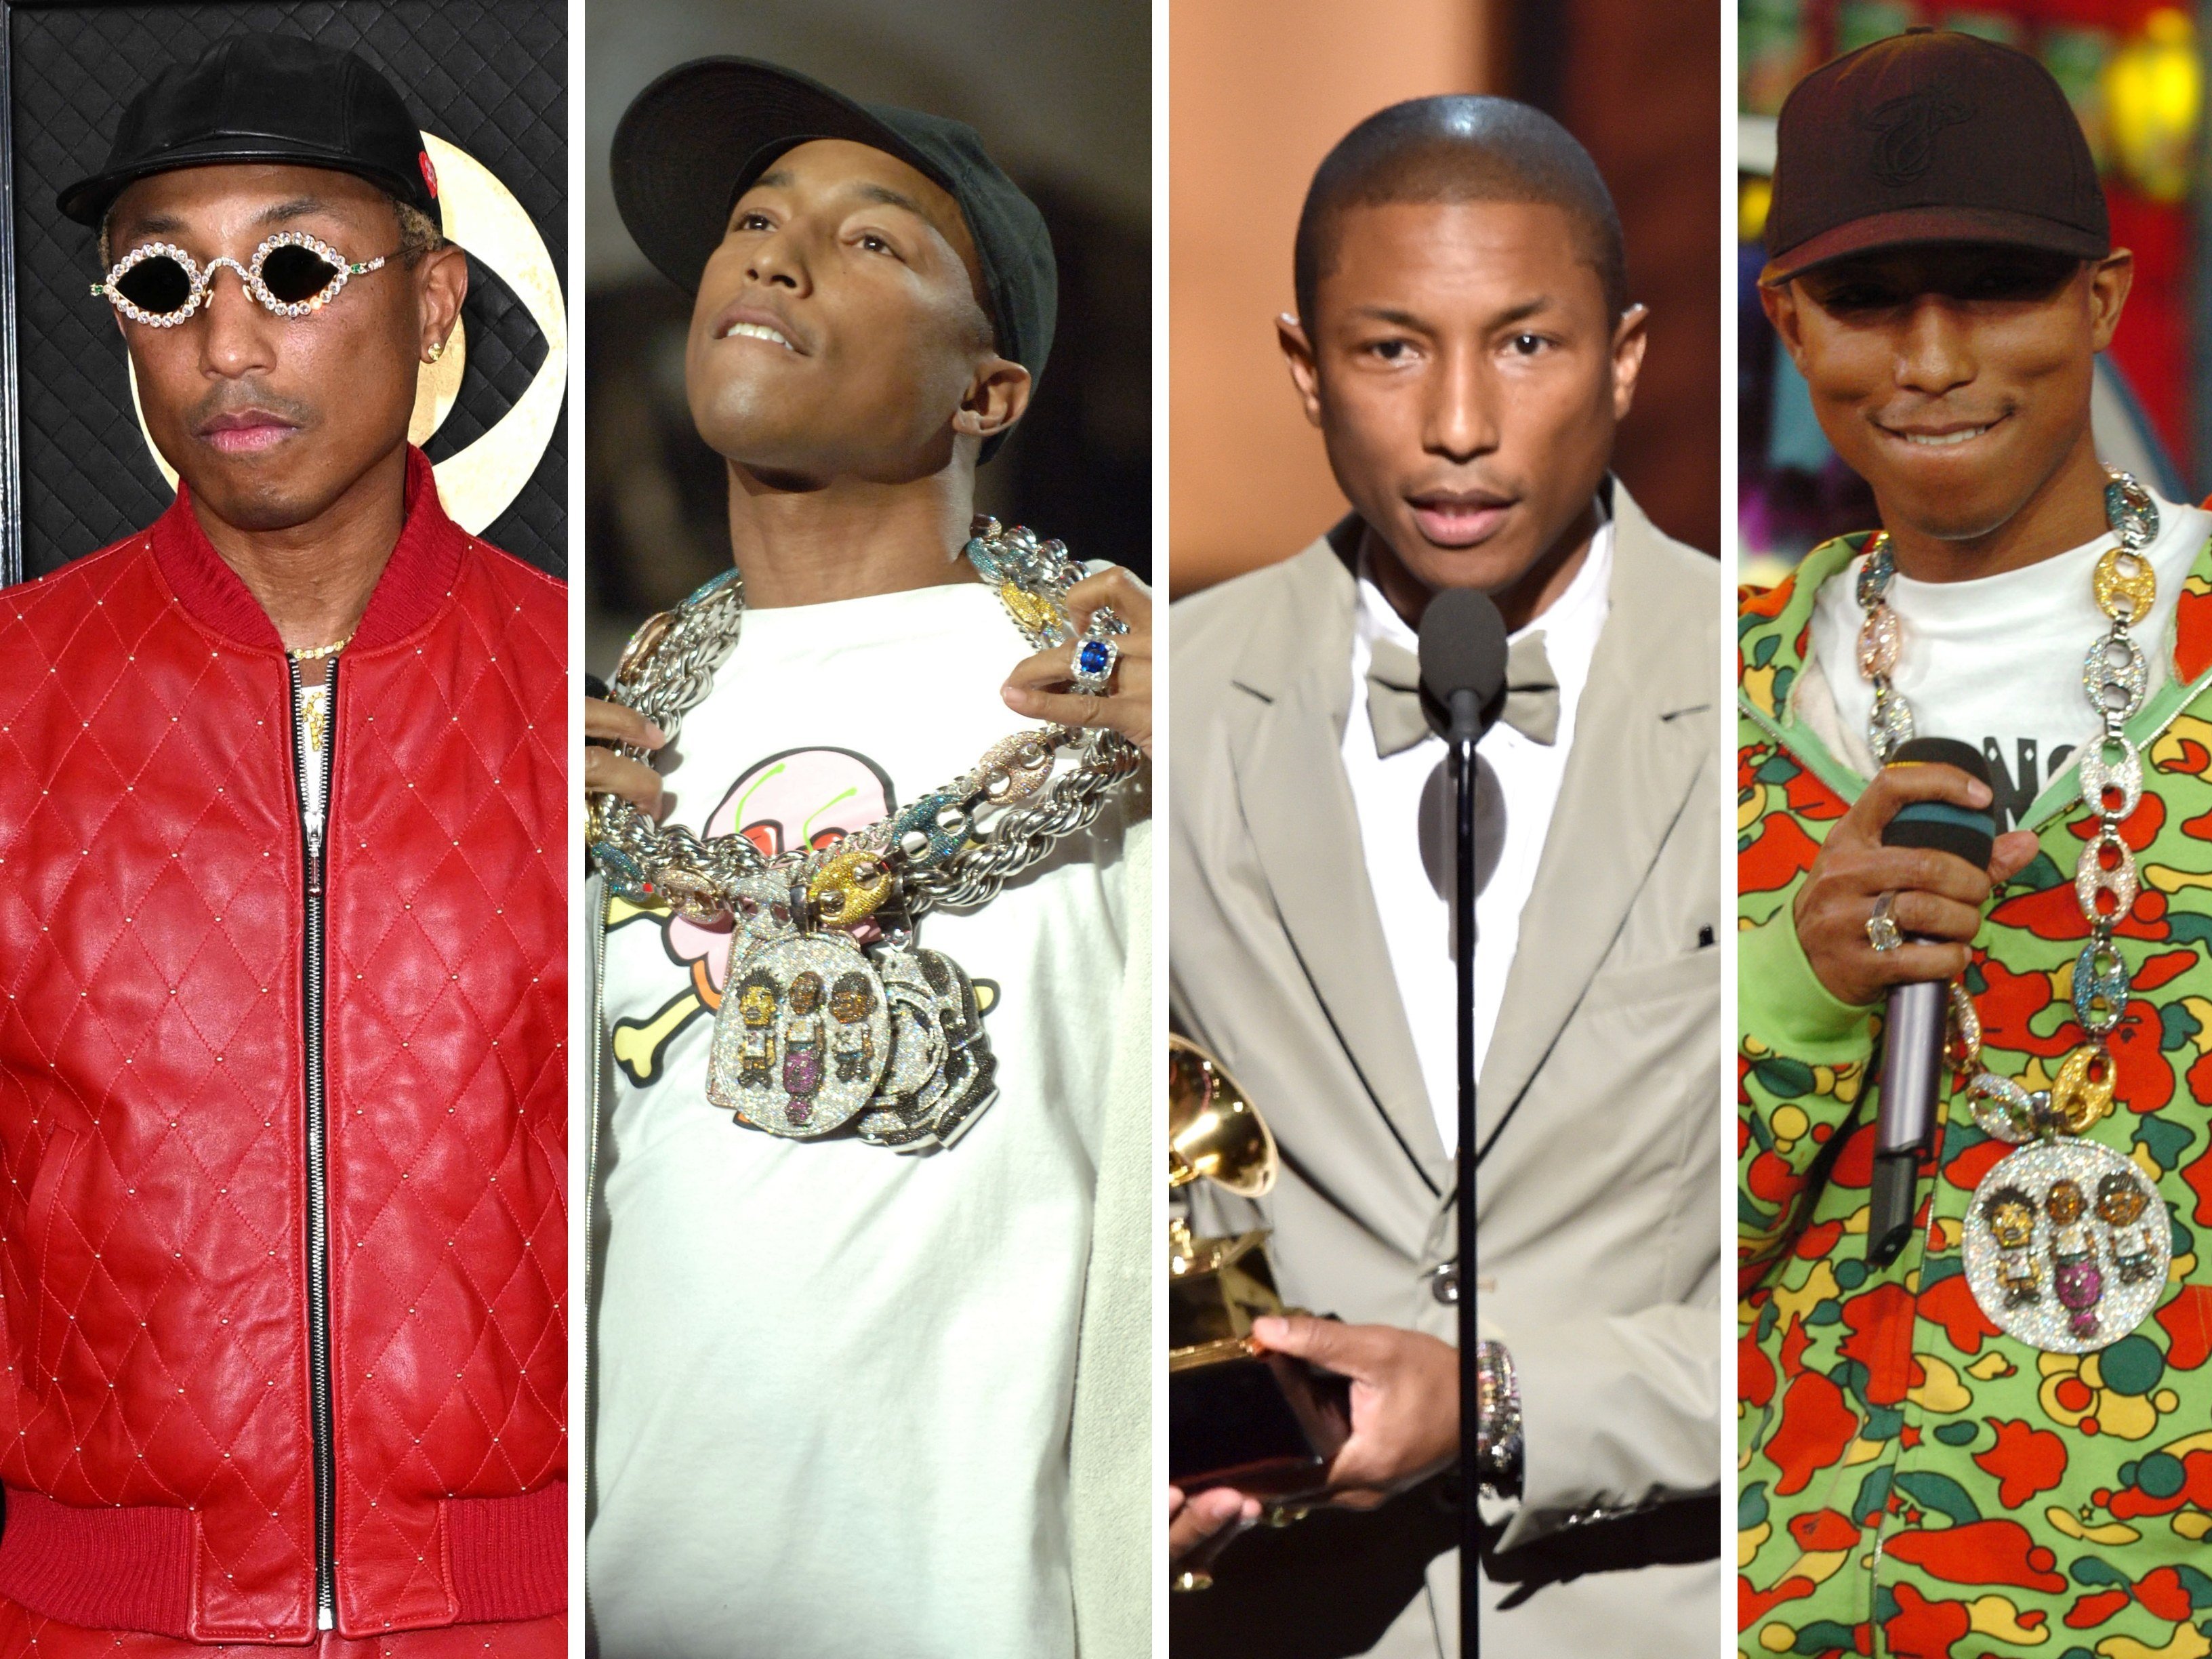 Pharrell in Ernest W. Baker @ Grammys 2023